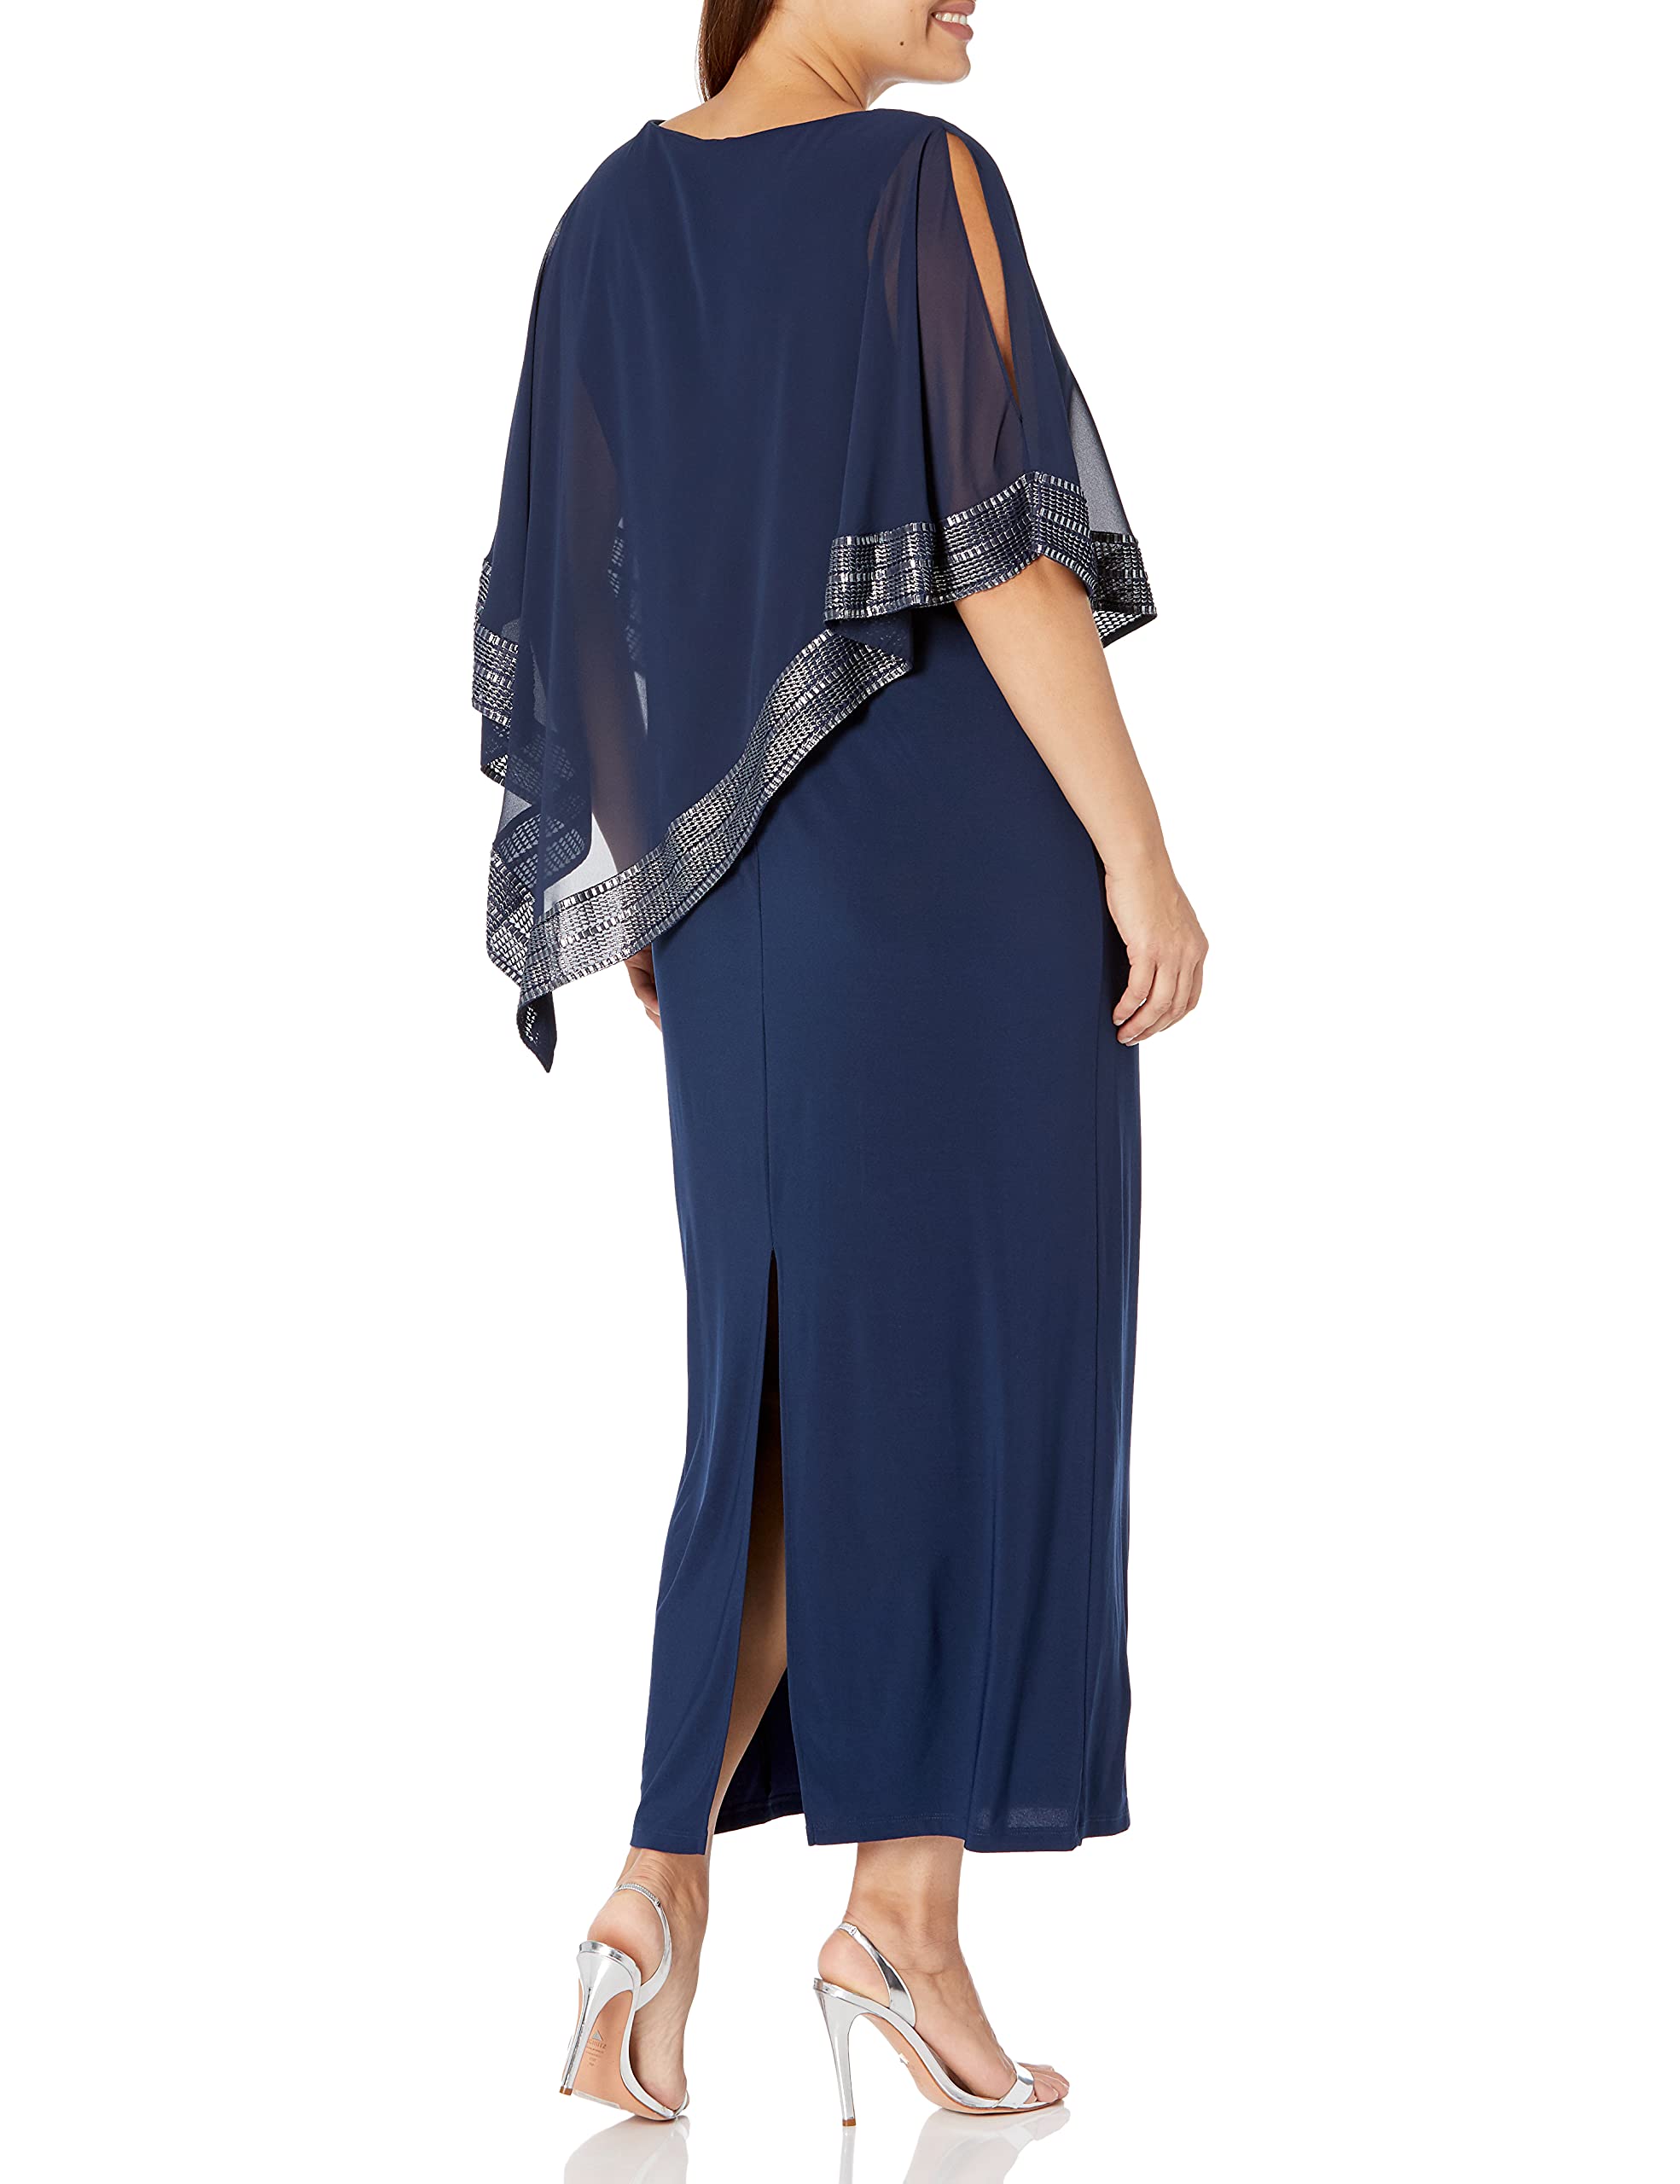 S.L. Fashions Women's Plus Size Long Cold Shoulder Capelet Dress with Metallic Trim